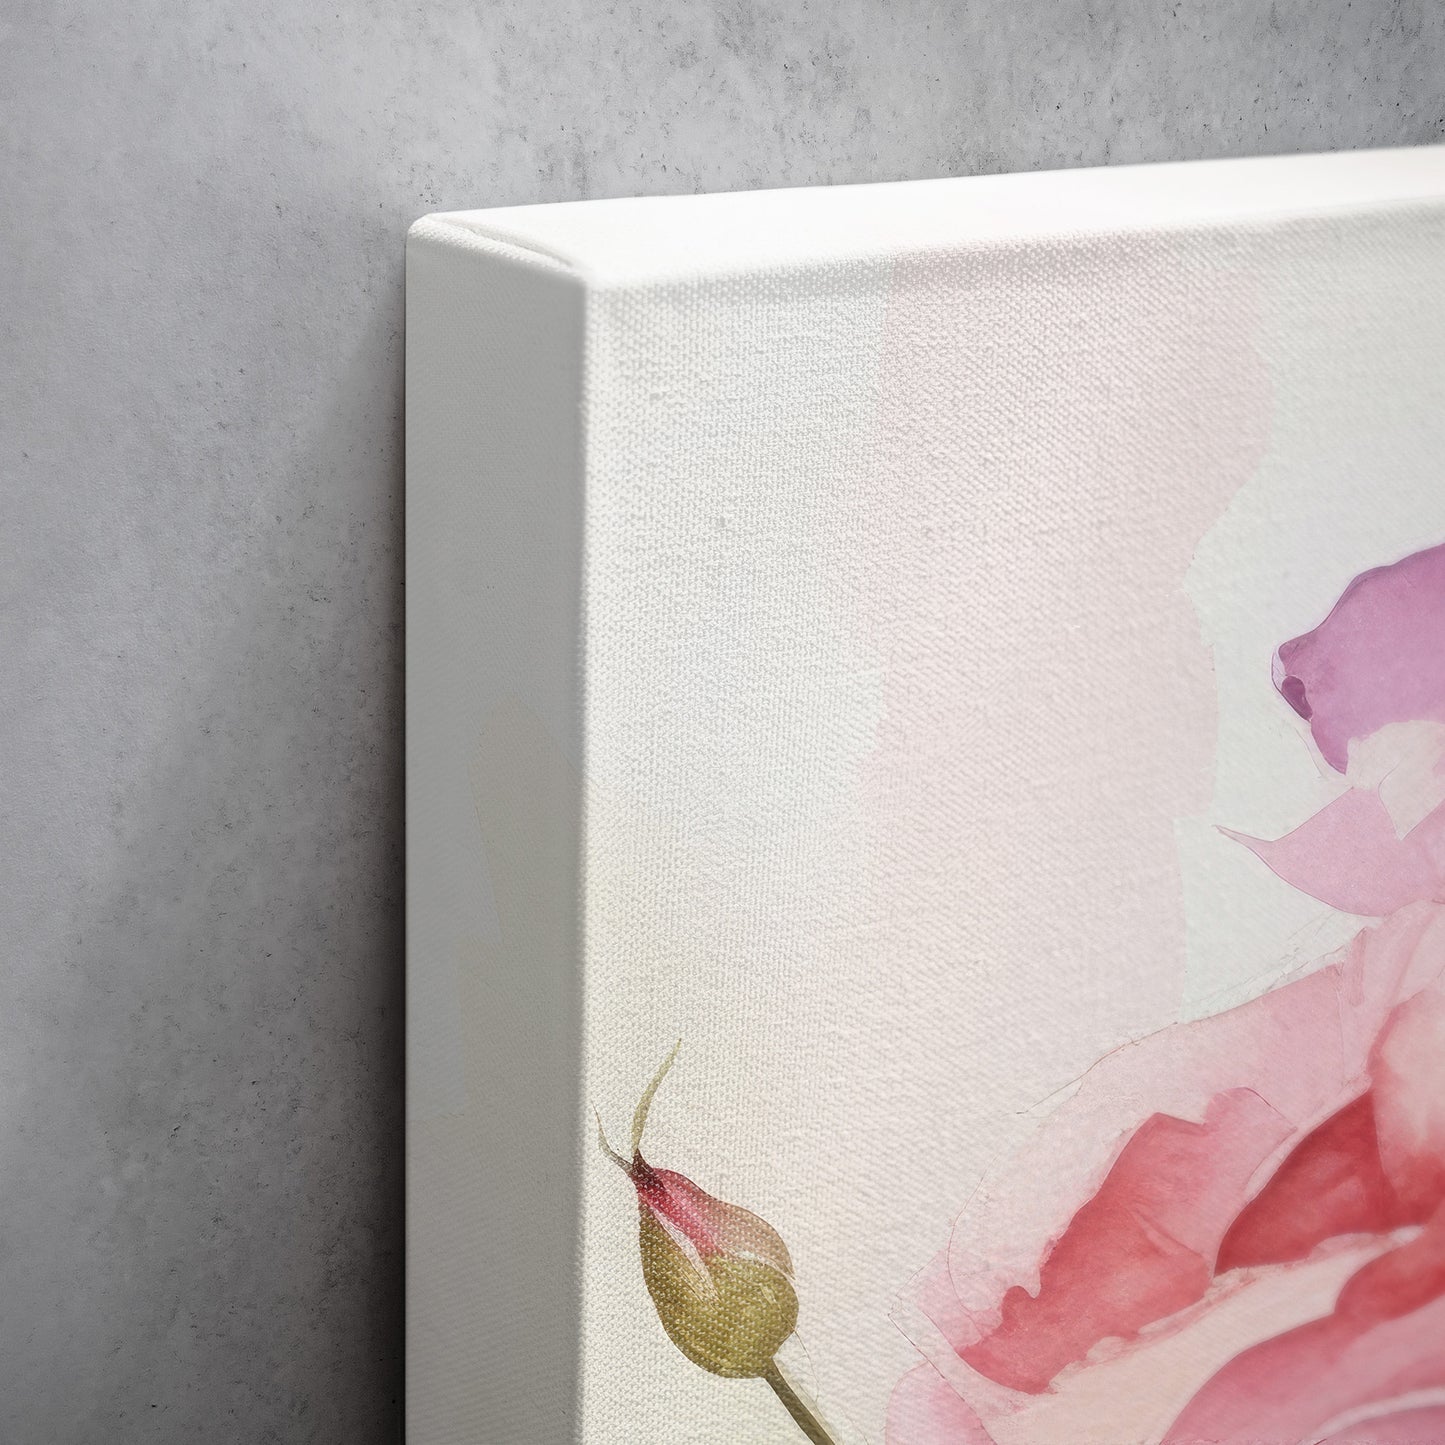 Rose Watercolor – Floral Botanical Art